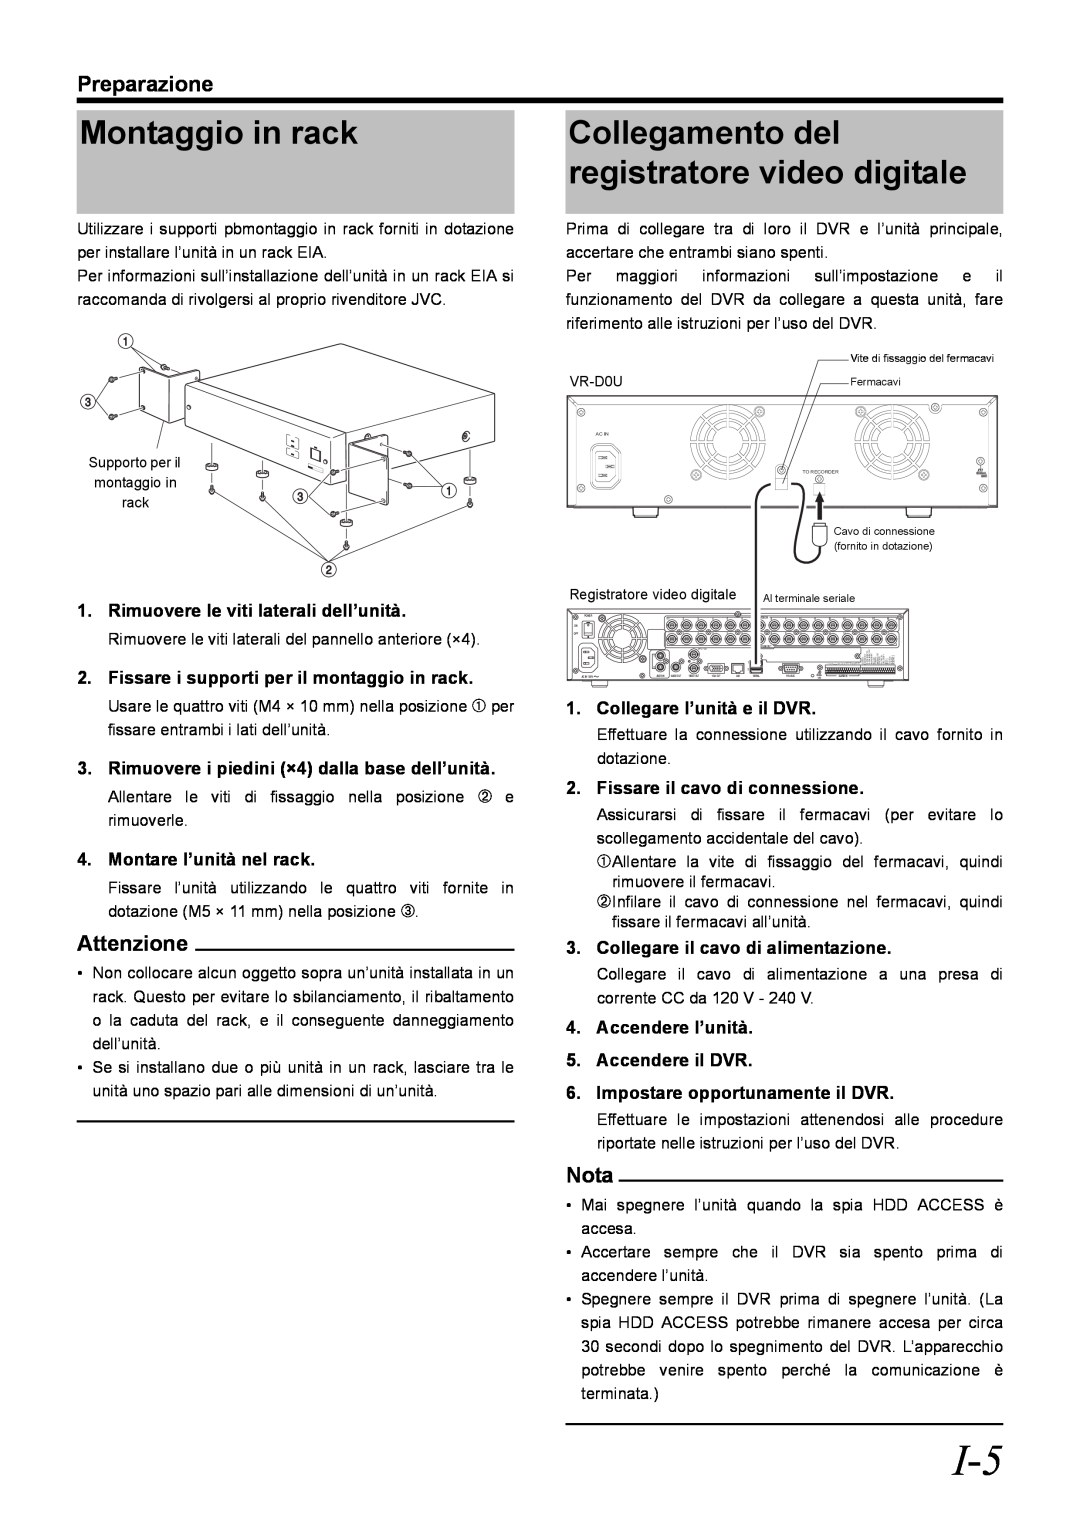 JVC VR-D0U manual Montaggio in rack, Collegamento del, registratore video digitale, Preparazione, Attenzione, Nota 